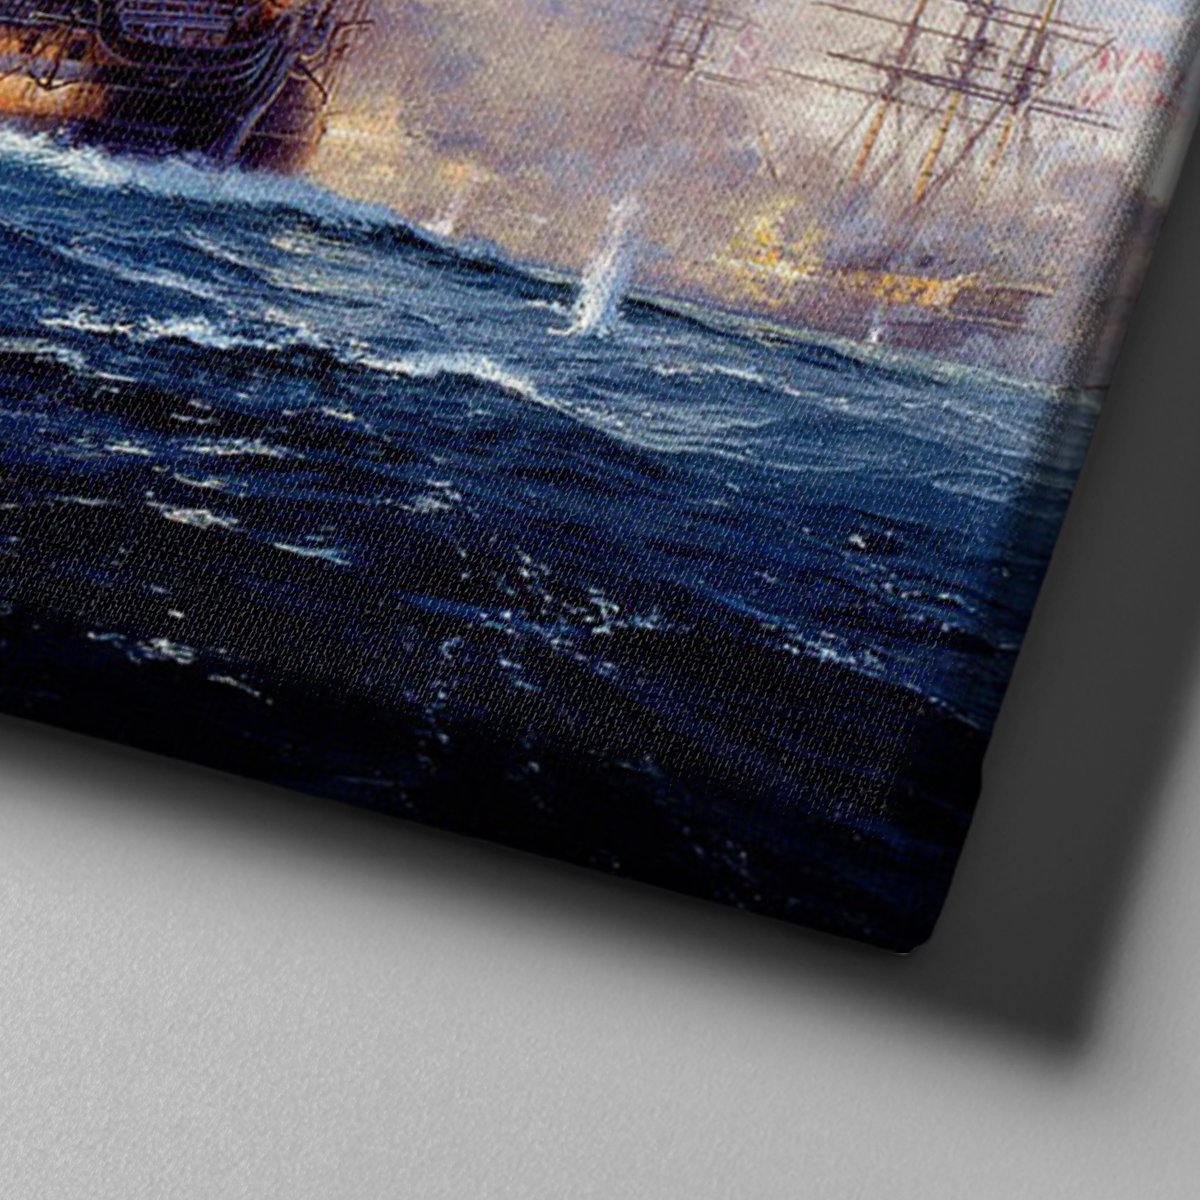 Canvas701 | Yağlı Boya Görünümlü Yelkenli Gemiler Kanvas Tablo - 